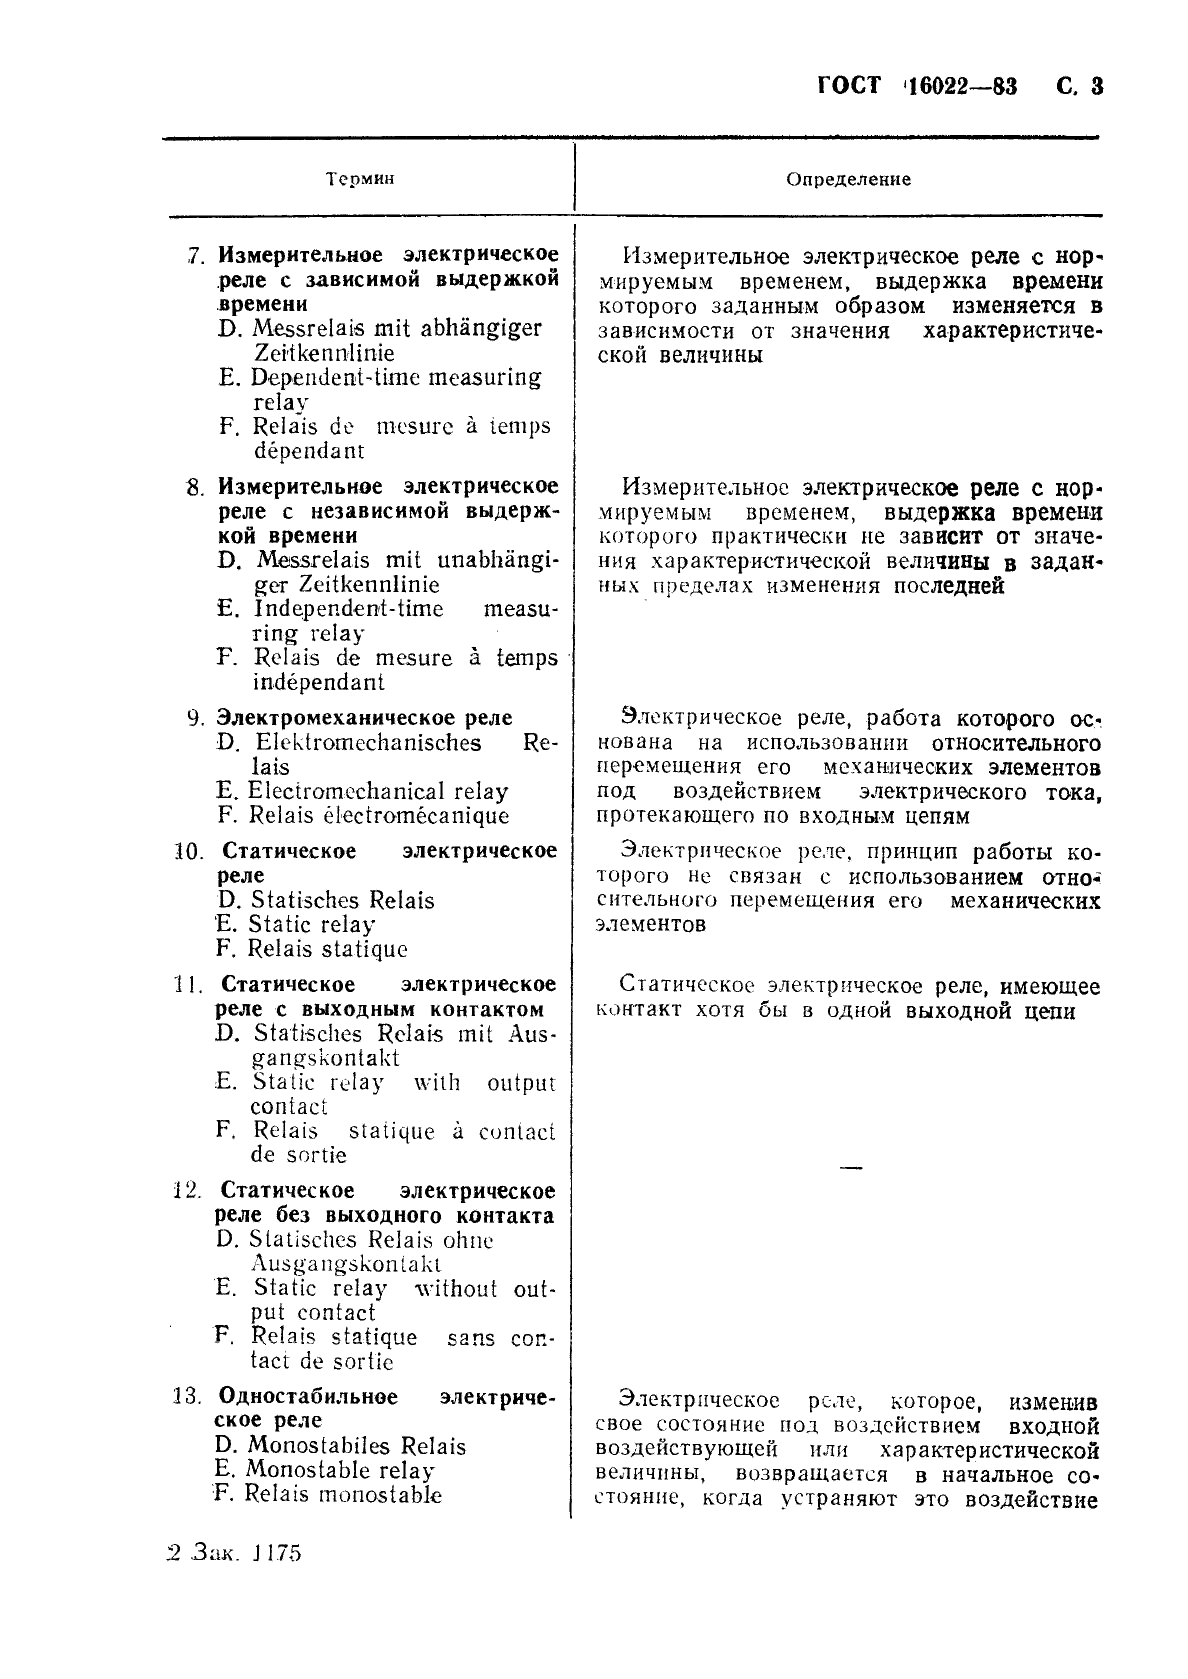 ГОСТ 16022-83 Реле электрические. Термины и определения (фото 4 из 37)